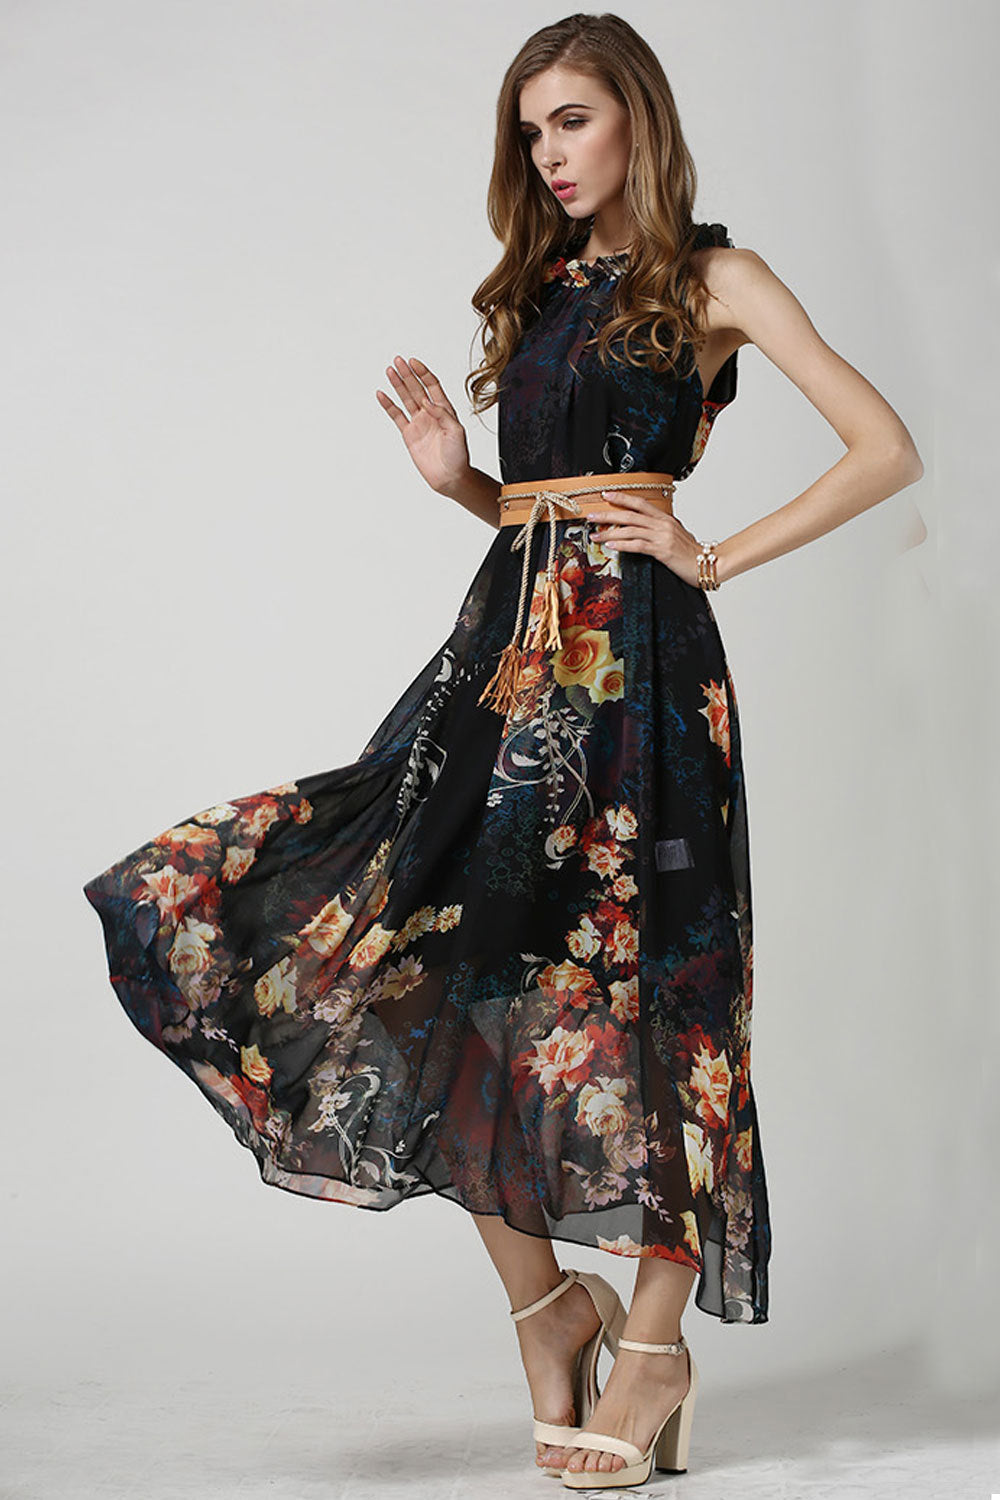 Ketty More Women's Sleeveless High-Waist Printed Chiffon Dress-KMWD214